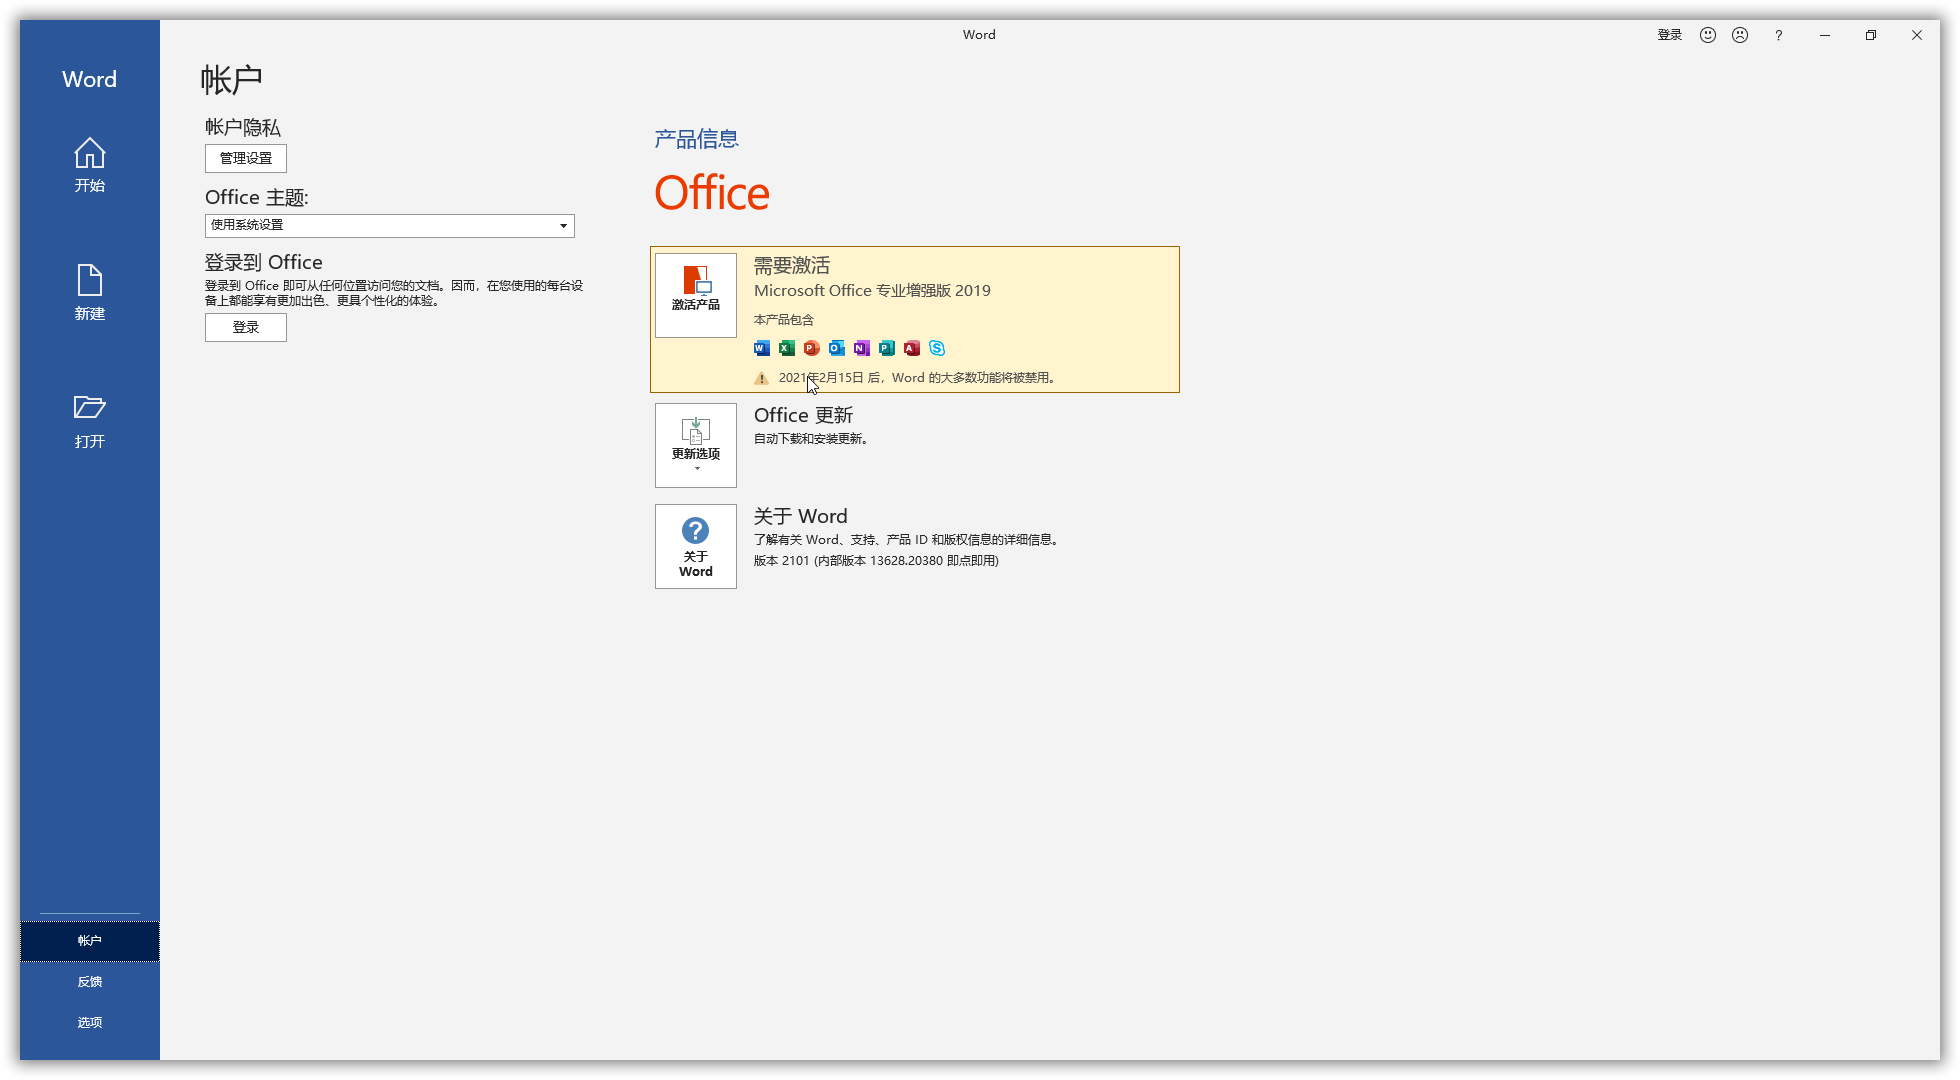 OInstall【Office 2013-2019下载器】V7.0.5 汉化版-PK技术网